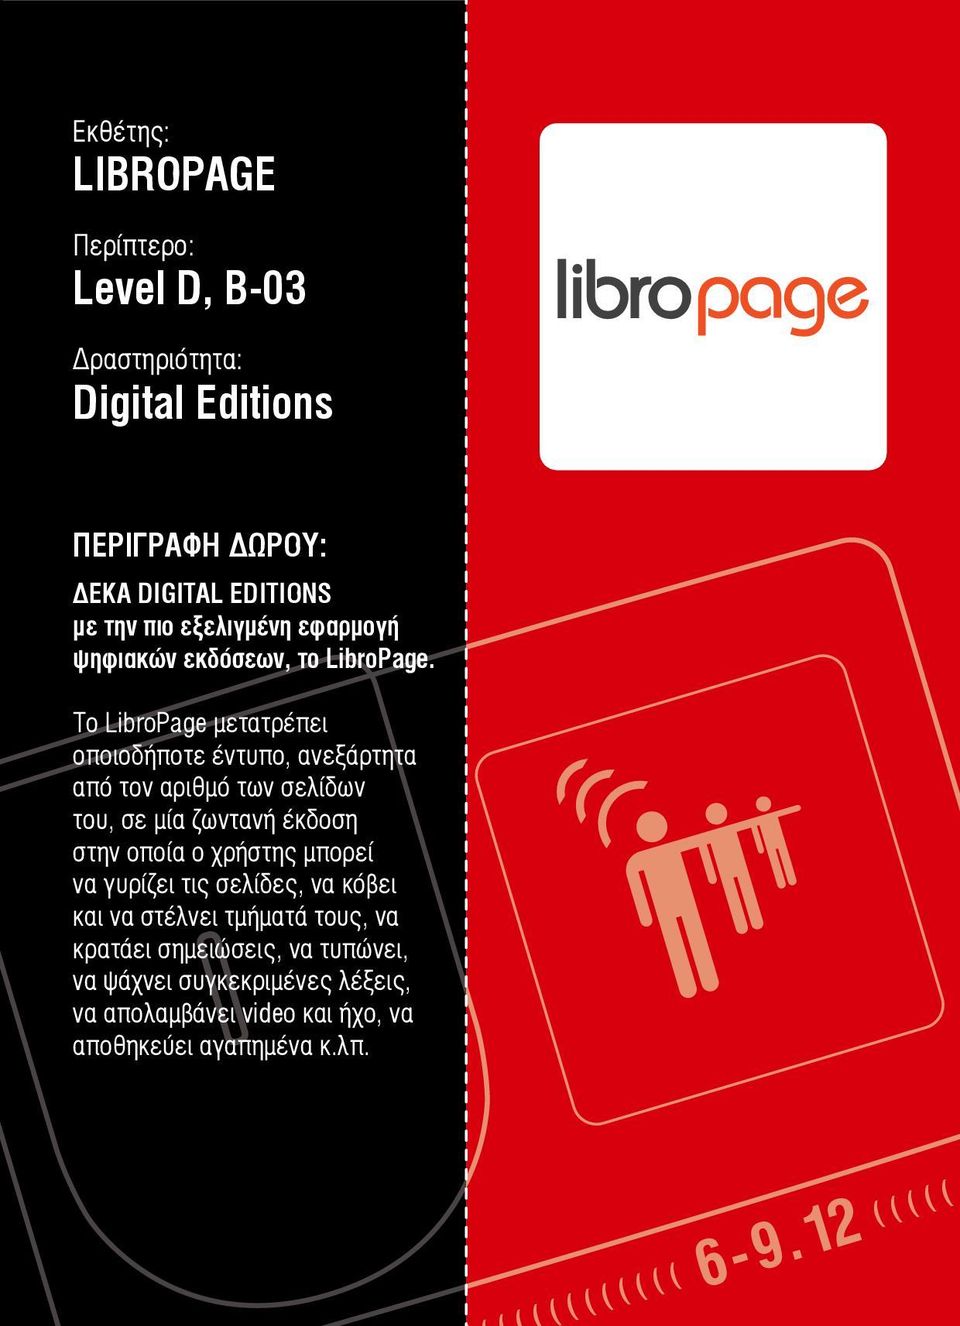 Το LibroPage μετατρέπει οποιοδήποτε έντυπο, ανεξάρτητα από τον αριθμό των σελίδων του, σε μία ζωντανή έκδοση στην οποία ο χρήστης